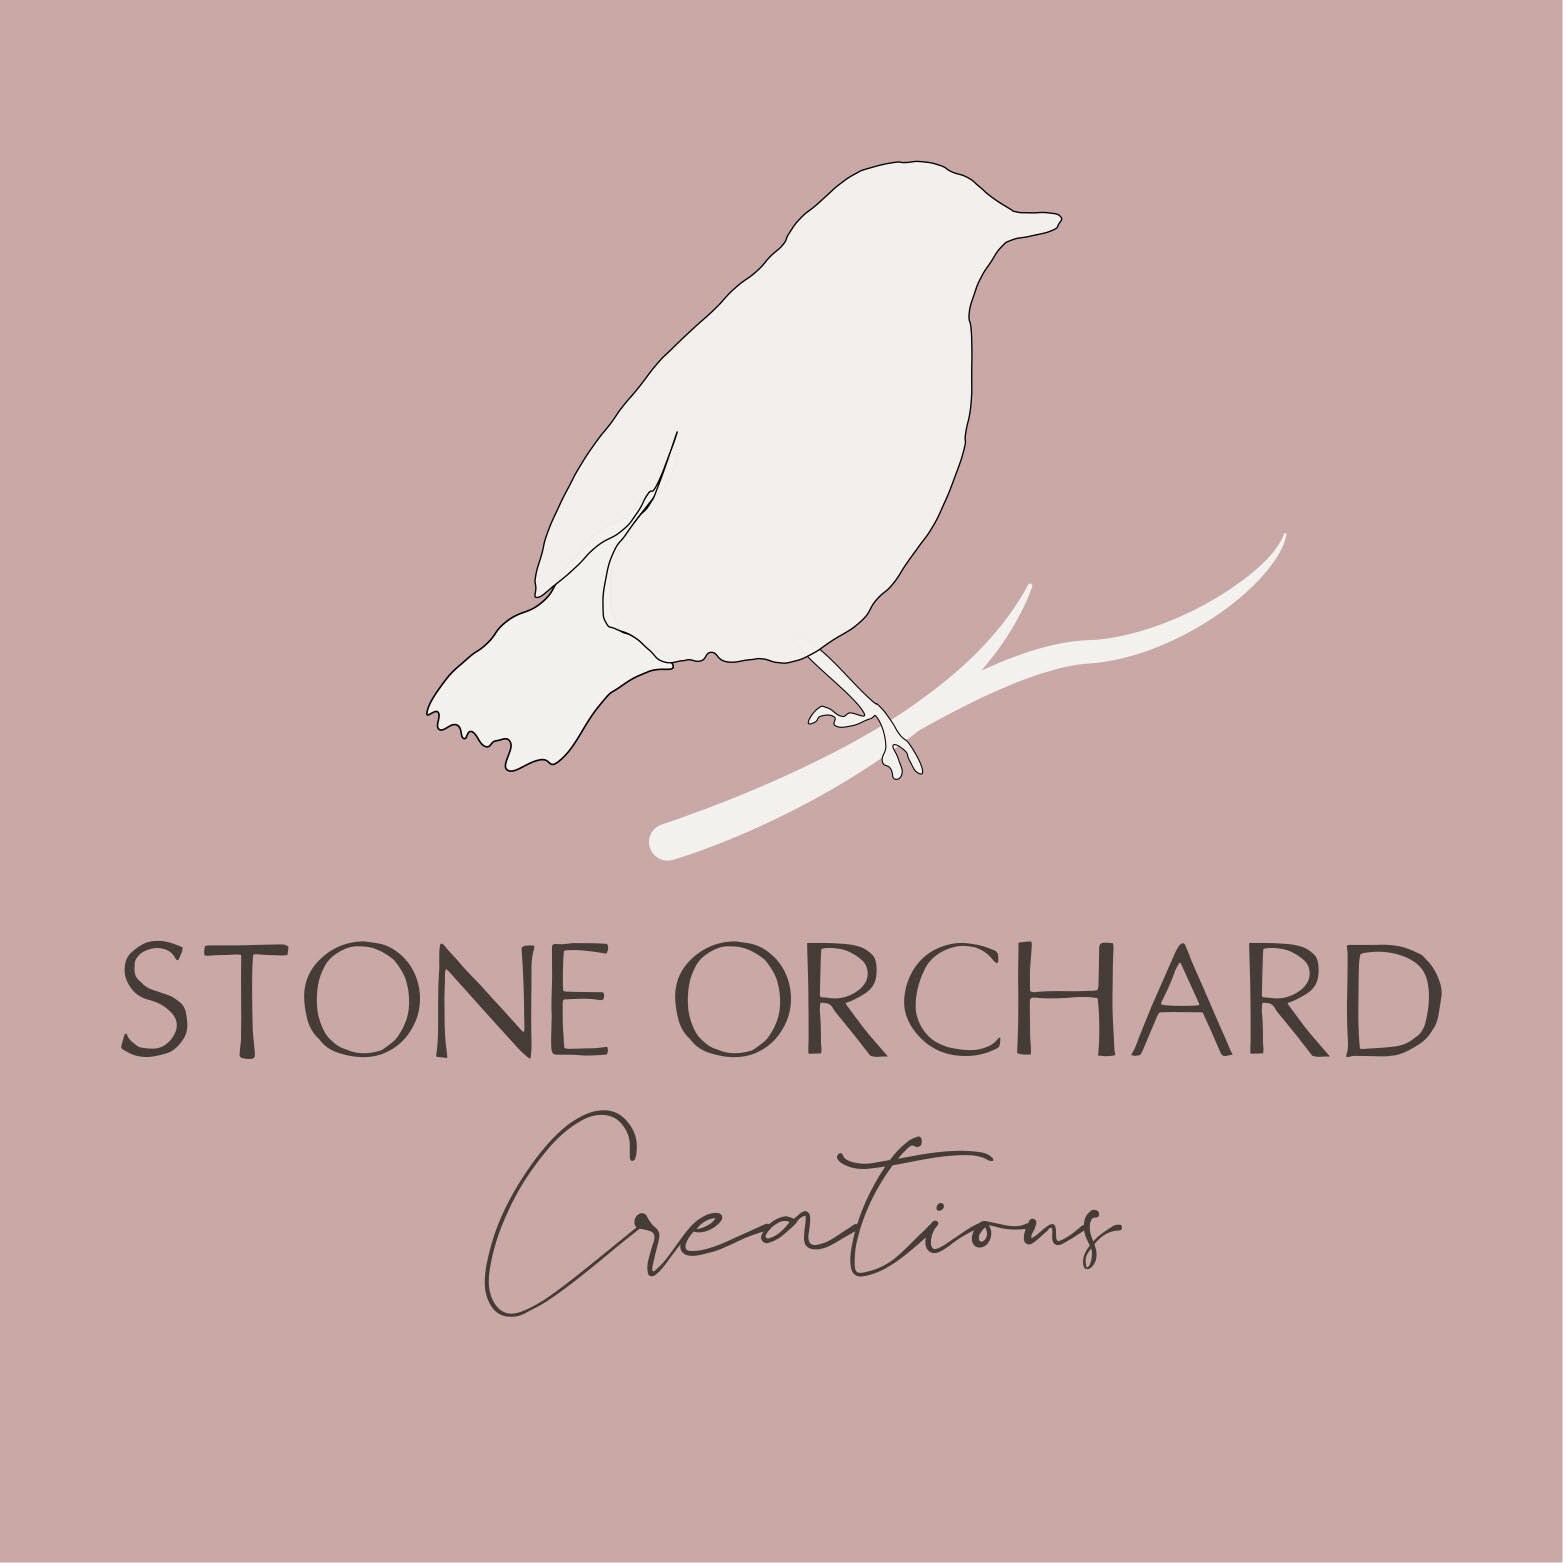 StoneOrchardCreation - Etsy